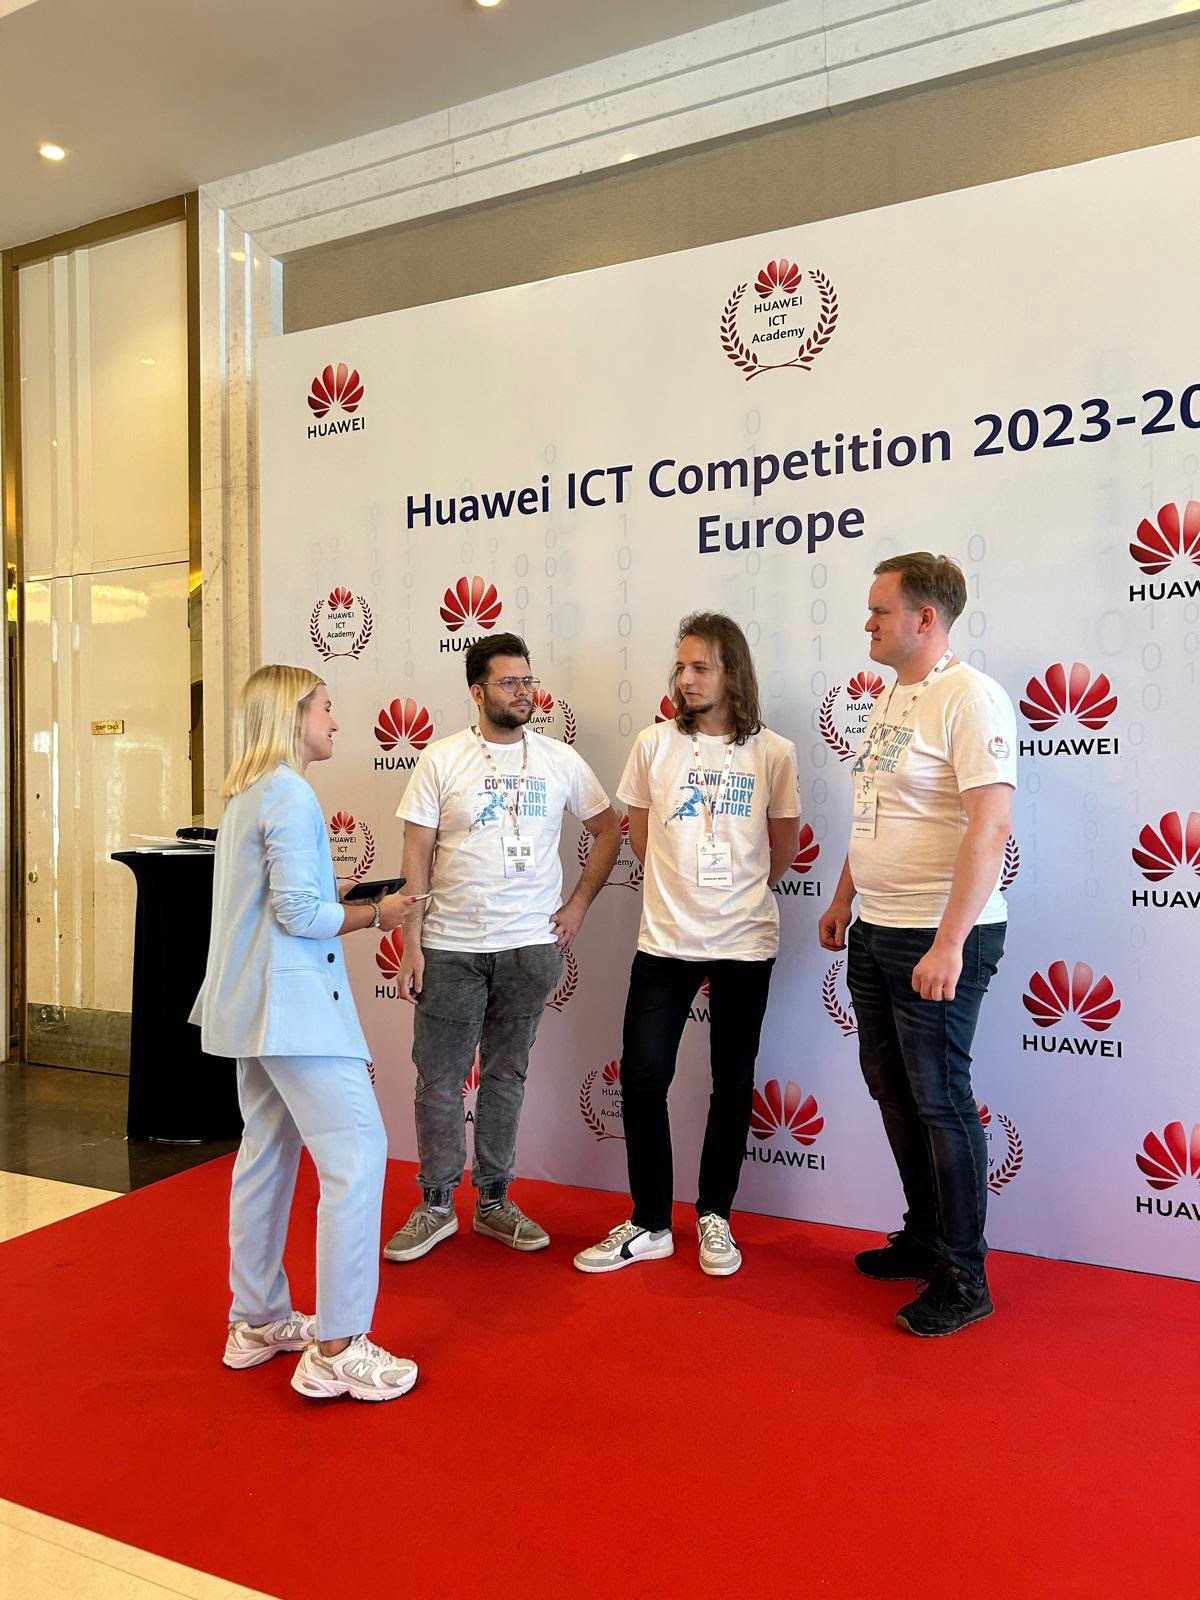 Cztery osoby rozmawiają przed ścianką reklamową z logo Huawei podczas Europejskich Zawodów ICT Huawei 2023-2024.